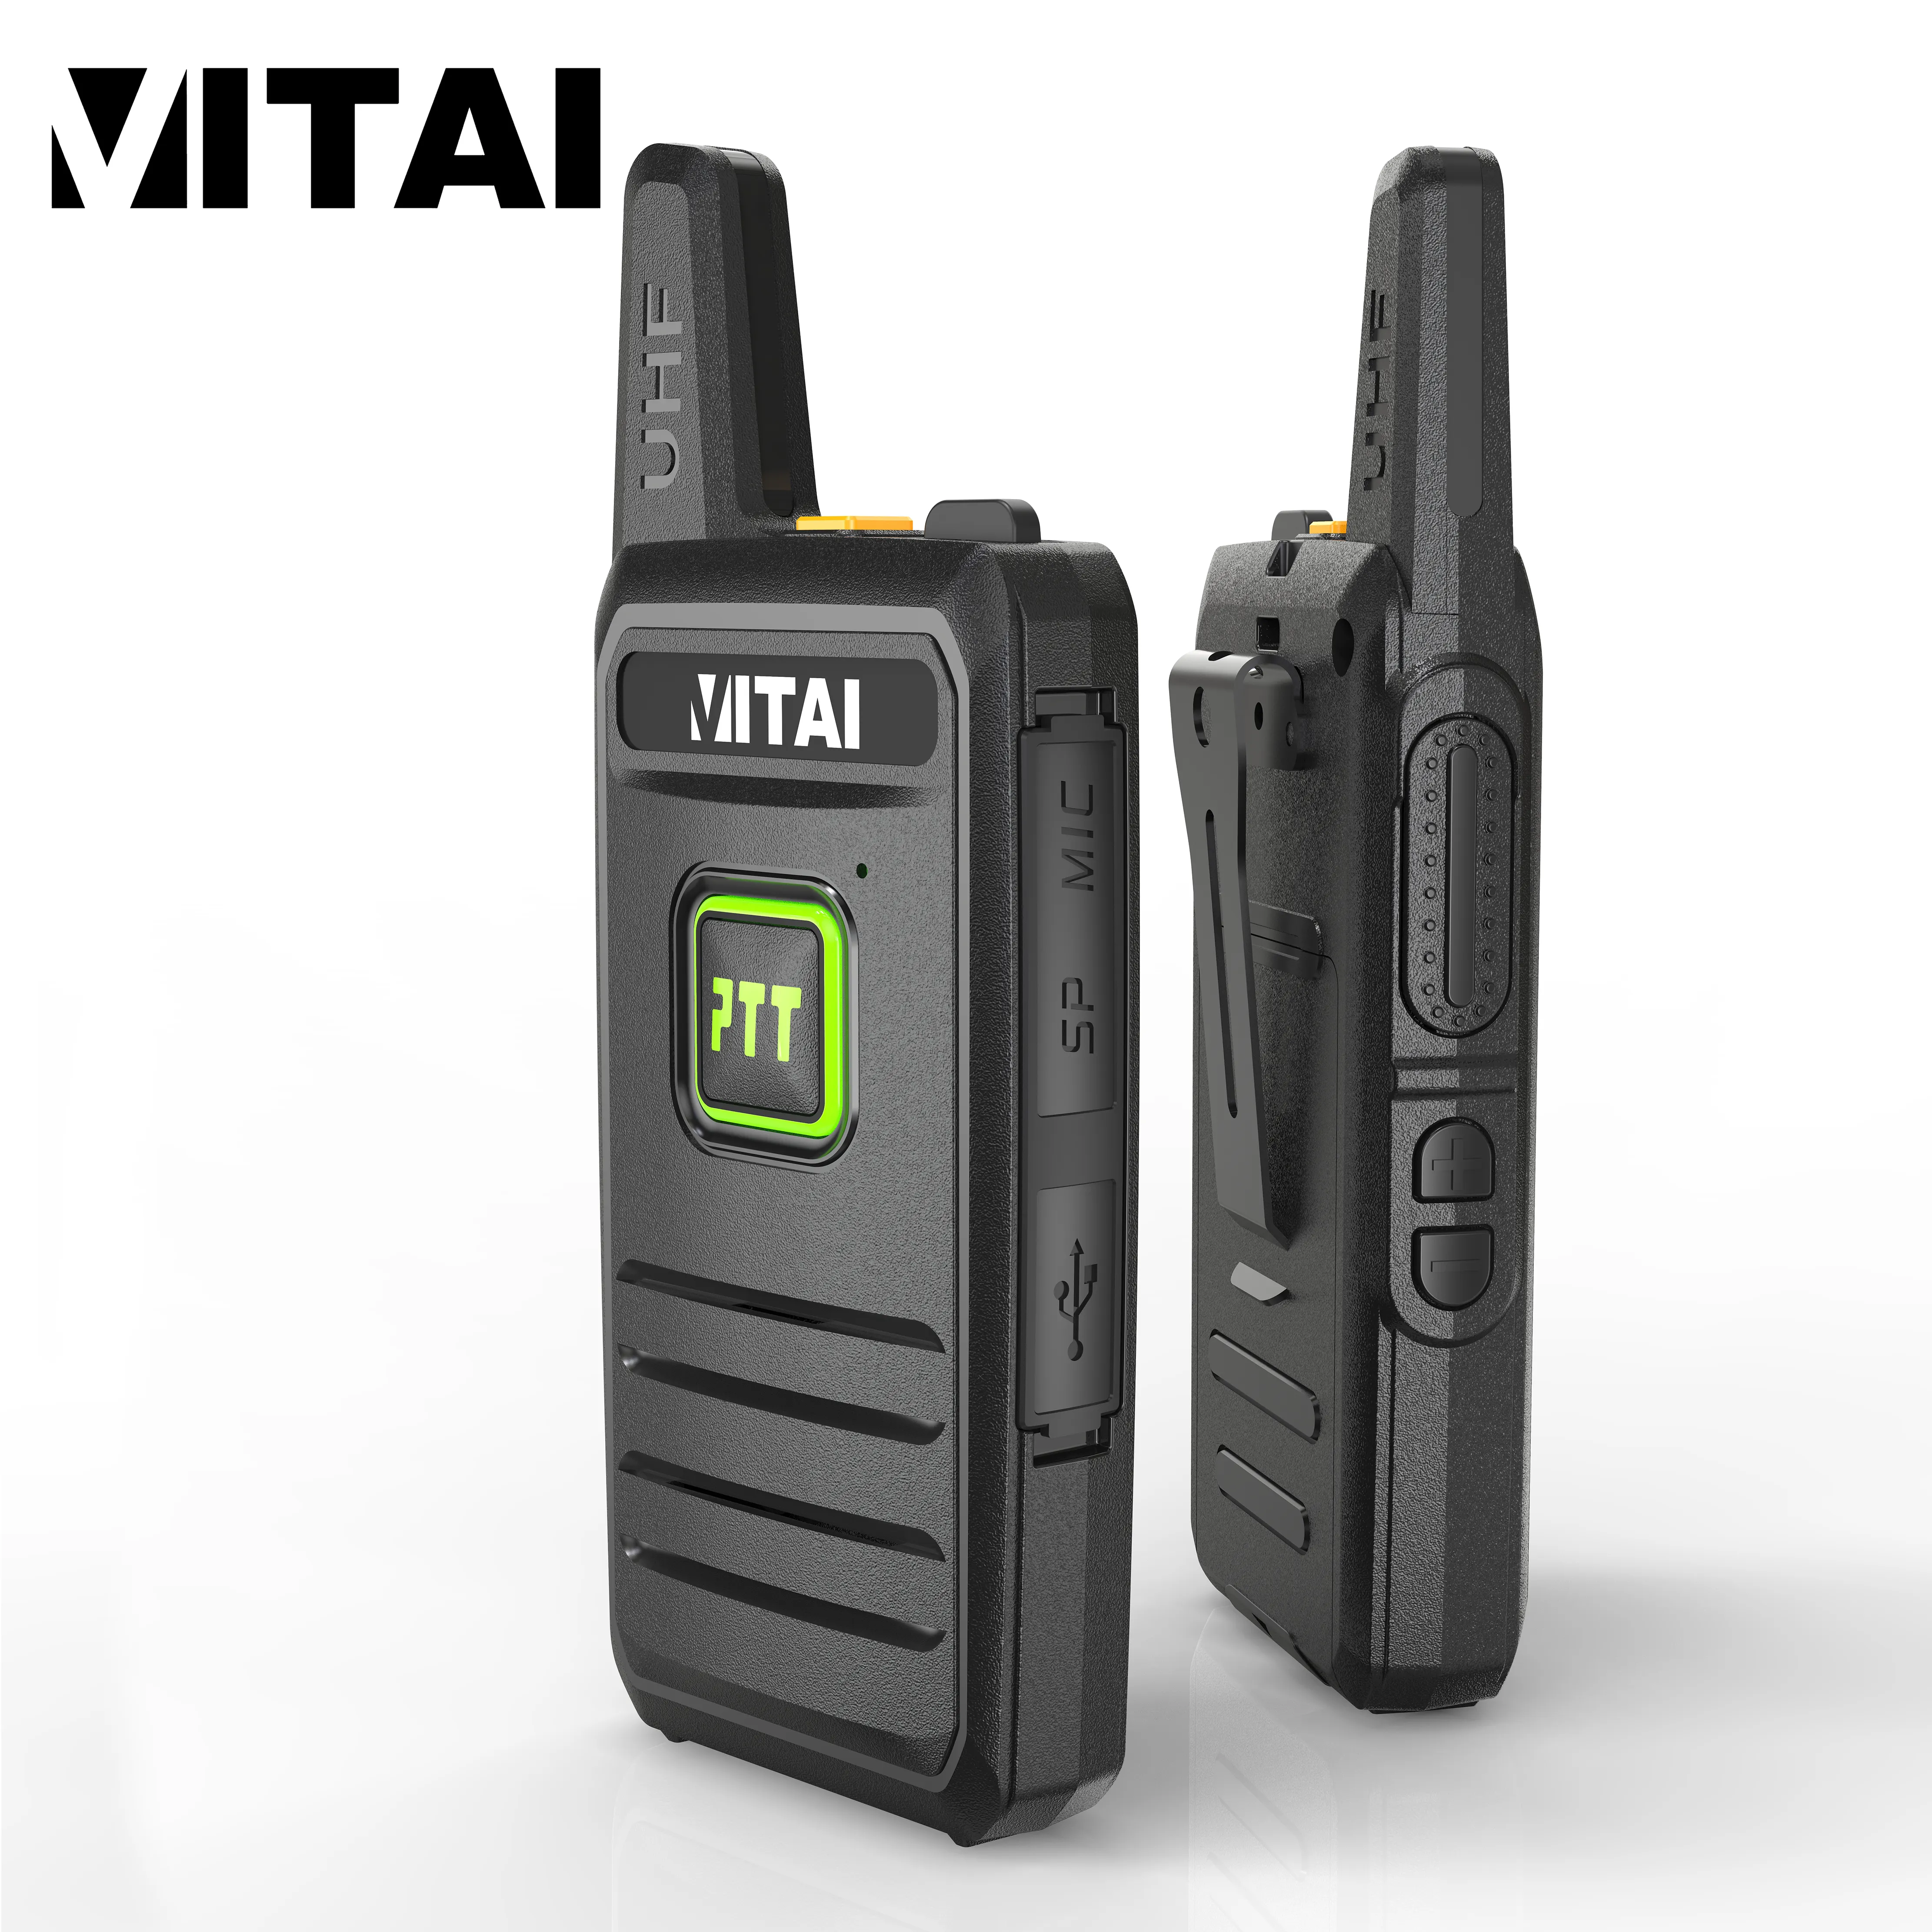 VITAI VT-446 PMR446 лицензионный удобный громоздкий выходная мощность 0,5 Вт двойной PPT FM-трансивер